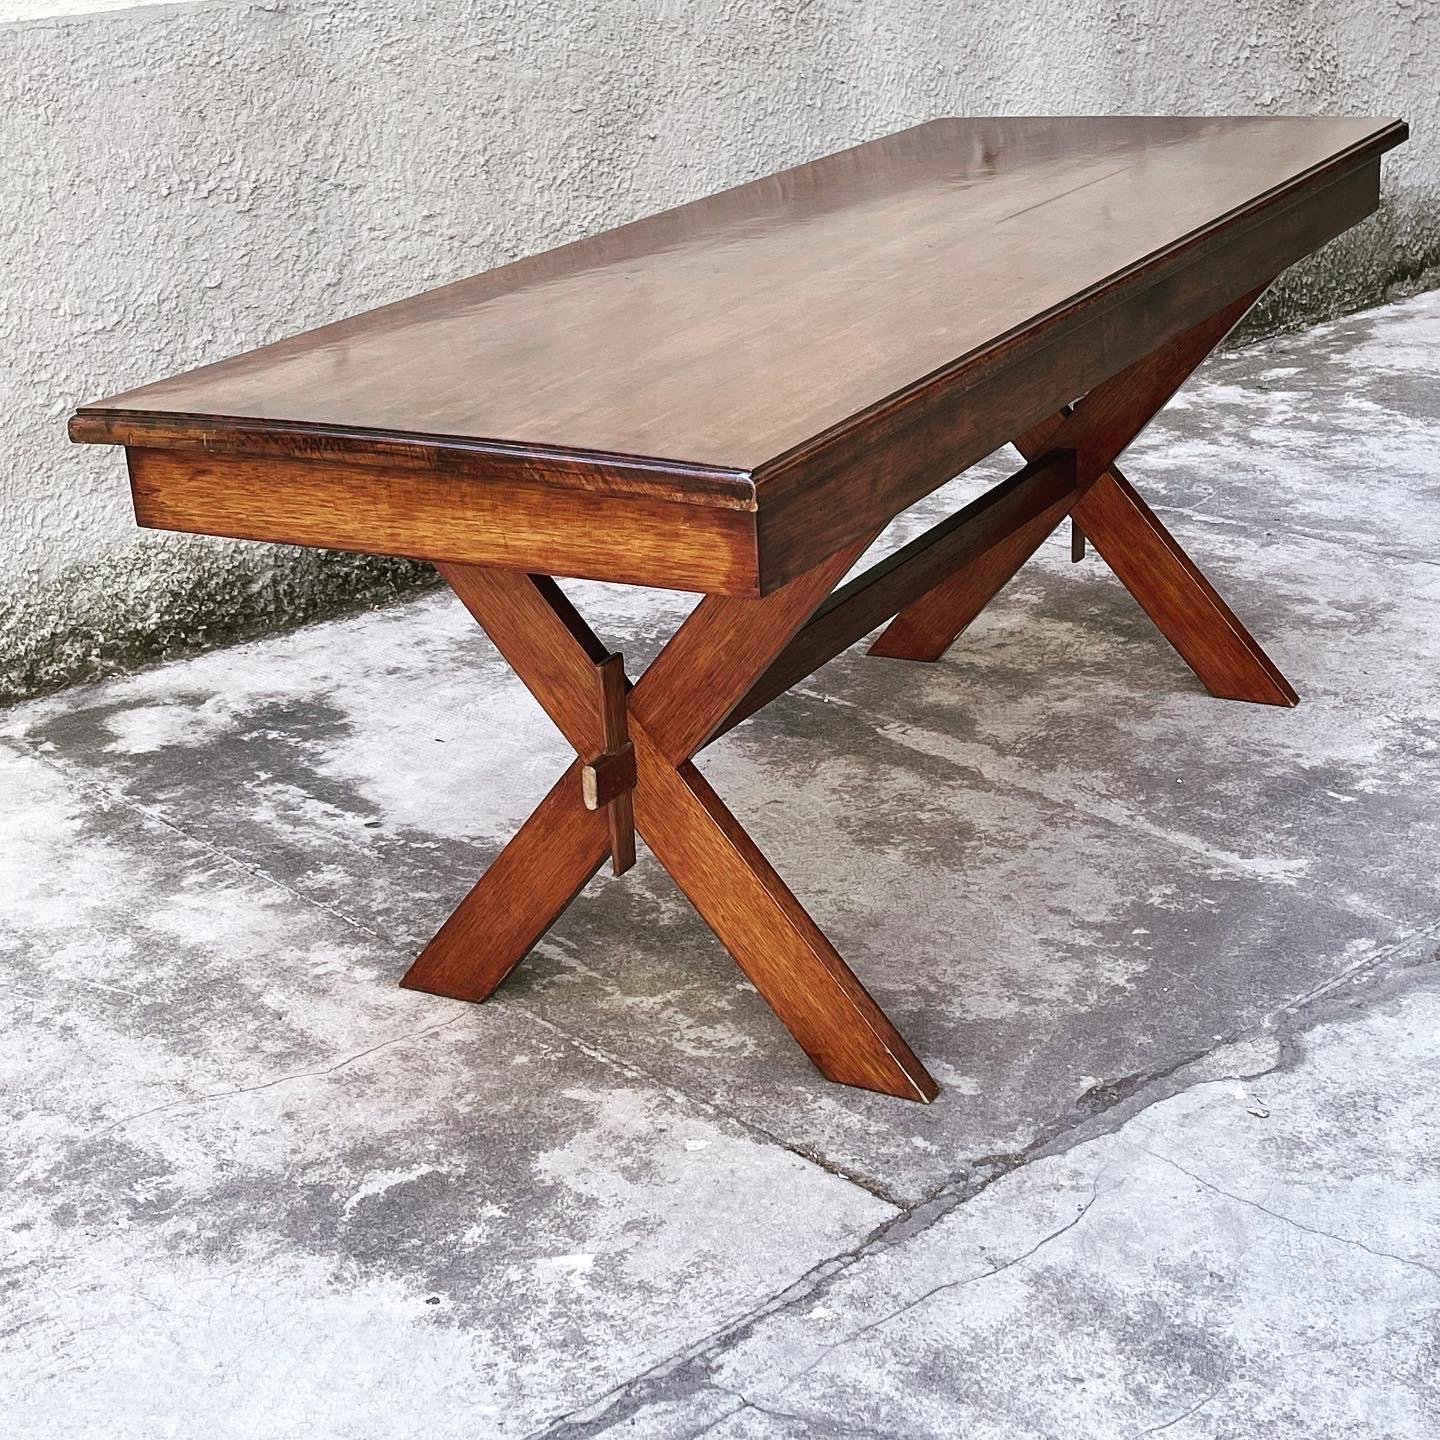 Rustikaler Esstisch mit X-förmigen Beinen aus massivem Eichenholz, hergestellt in Italien in den 1950er Jahren. Er bietet sechs Personen bequem Platz. Der Tisch ist in sehr gutem Zustand.
